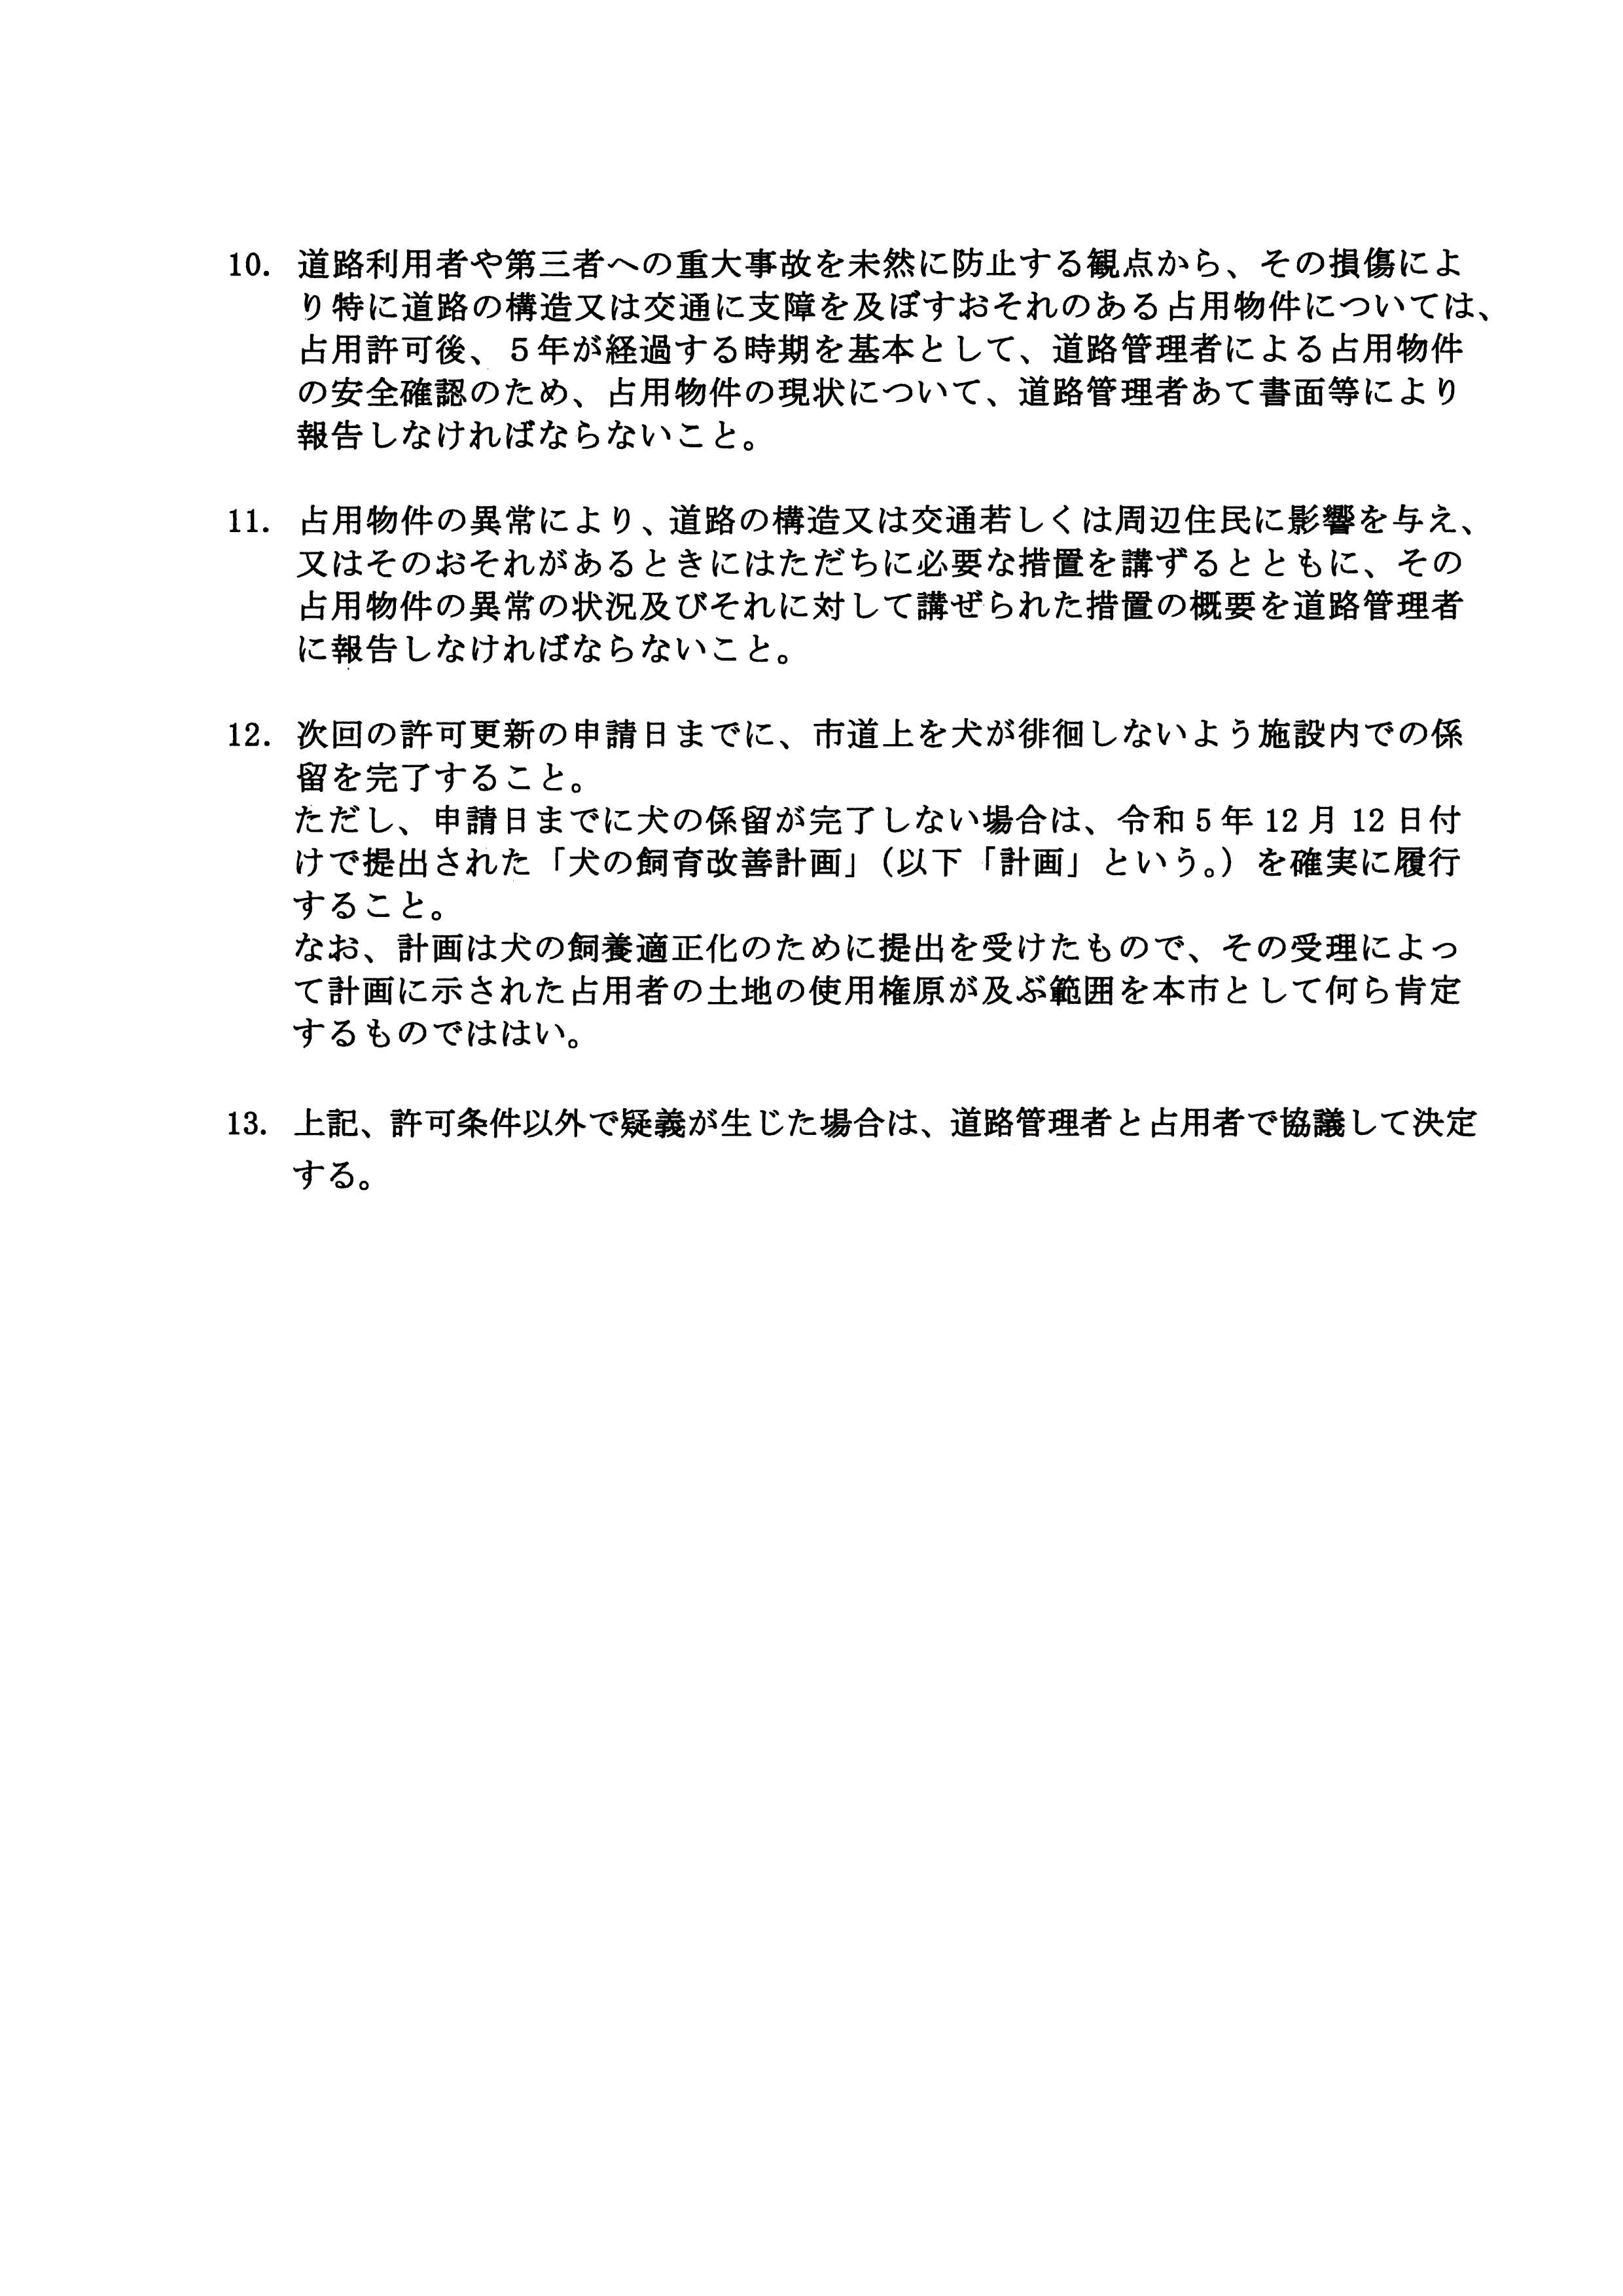 令和6(2024)年3月6日-(株)村田商店による道路使用及び道路占用許可に関する協議-10